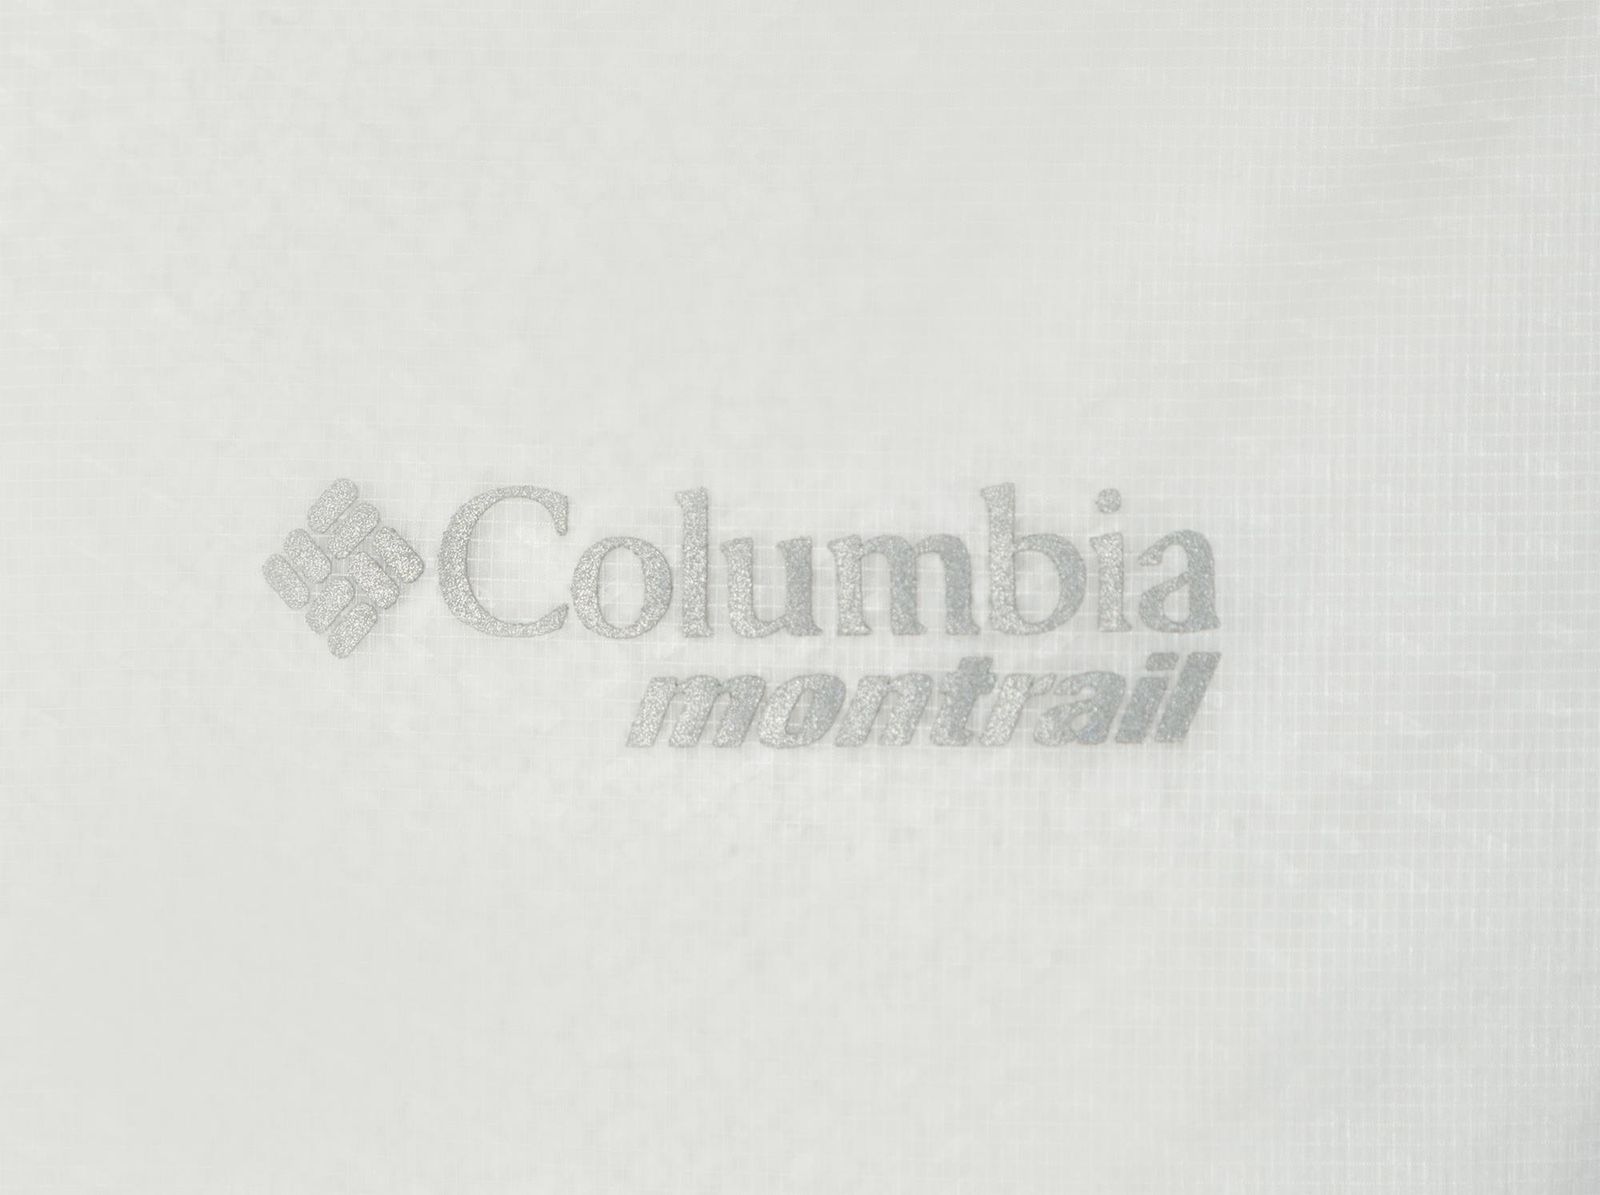   Columbia F, : . 1840921-031.  L (48/50)